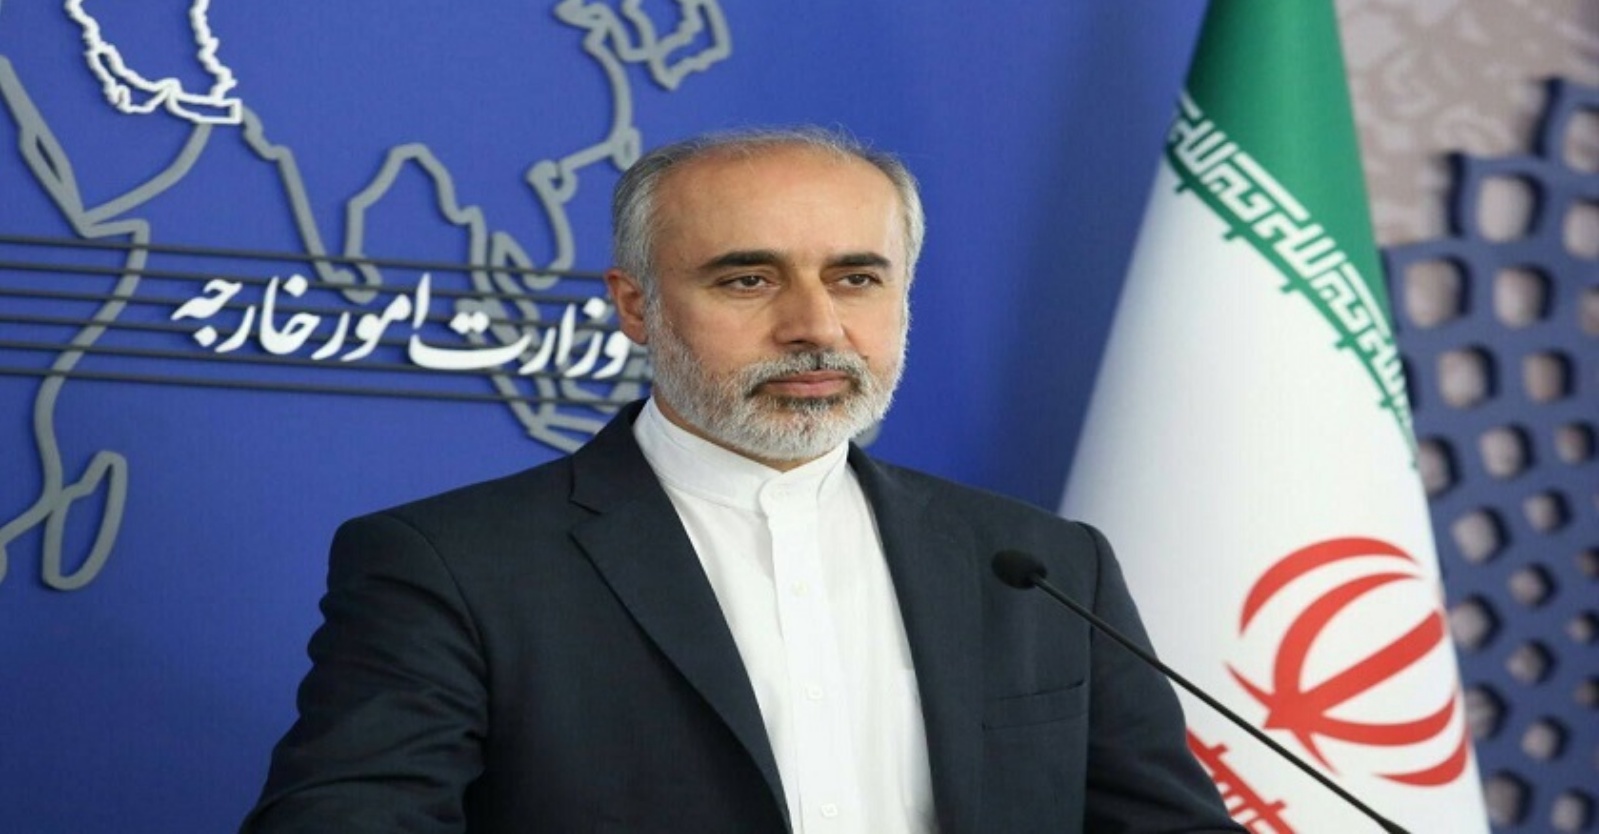 المتحدث باسم وزارة الخارجية الإيرانية ناصر كنعاني يعقد مؤتمراً صحفياً في طهران في 13 يوليو 2022